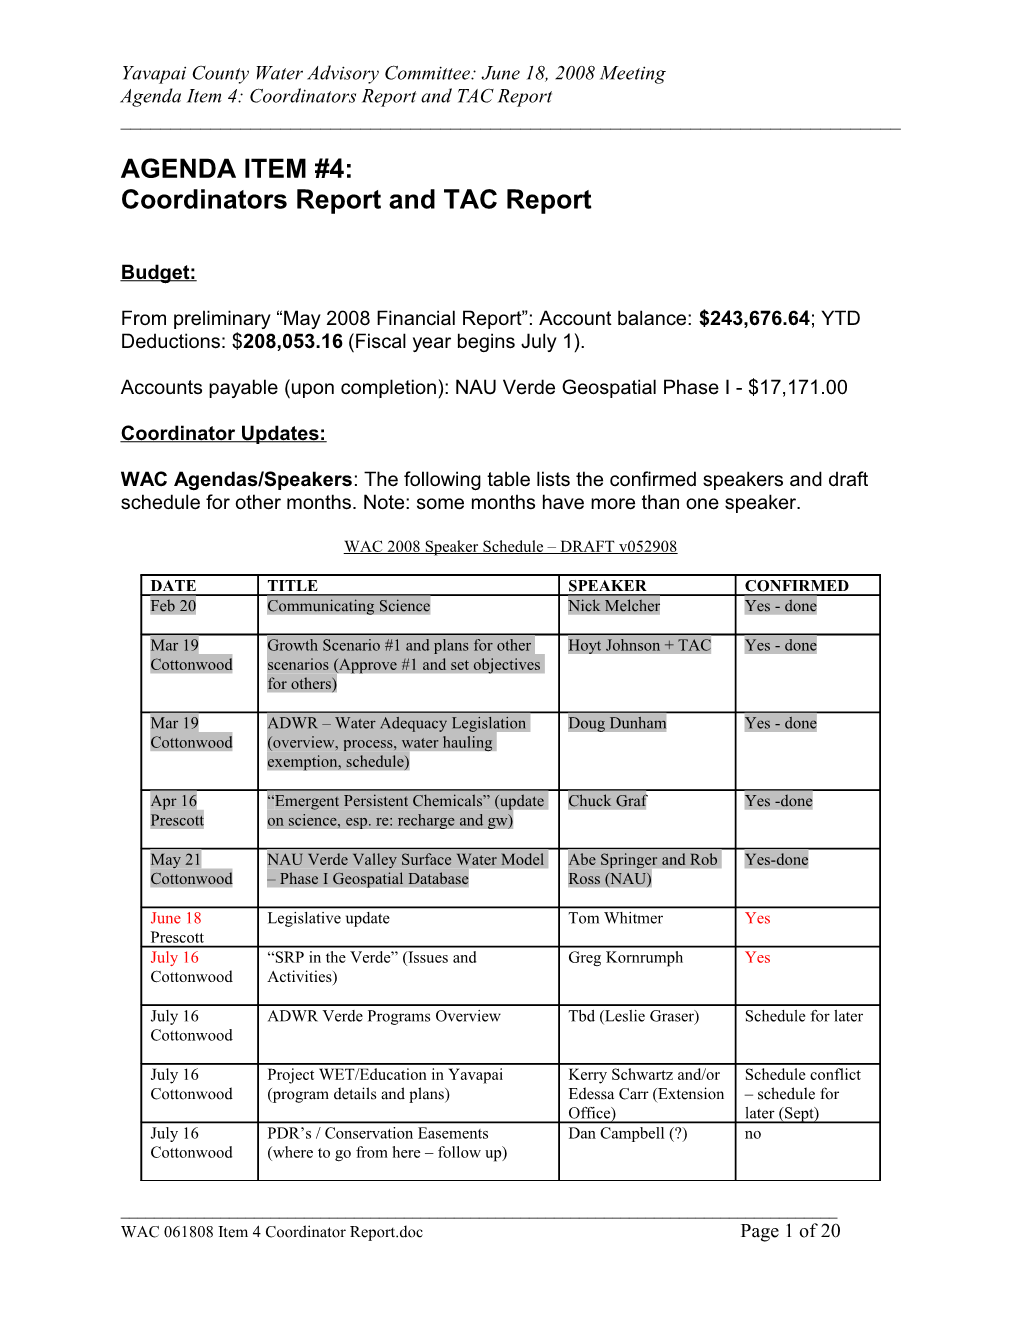 Agenda Item 4: Coordinators Report and TAC Report s1